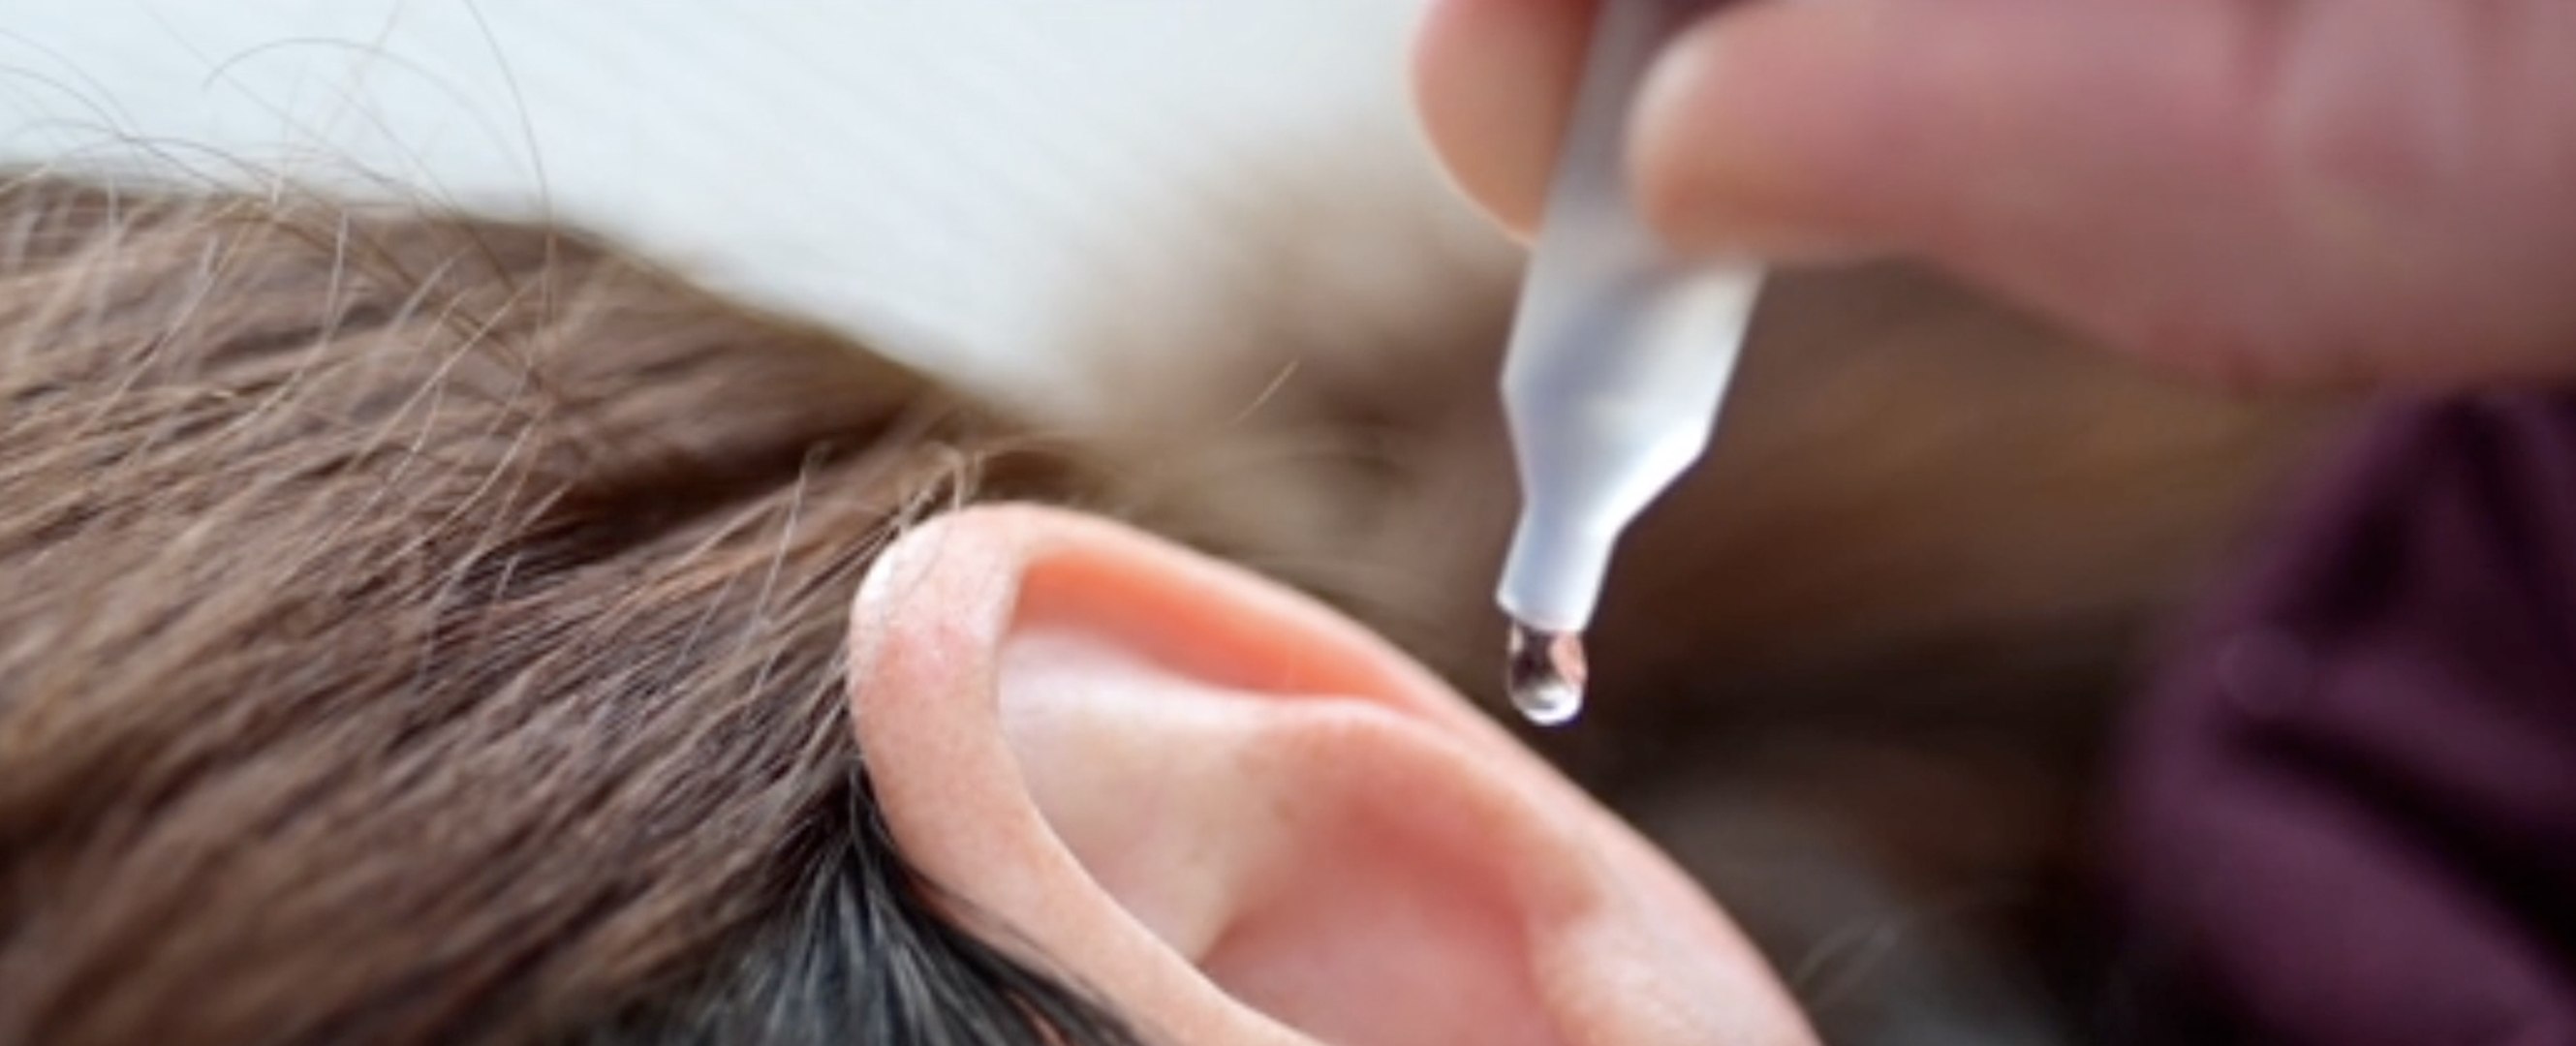 Comment et à quelle fréquence faut-il nettoyer ses oreilles ? - Vidéo  Dailymotion